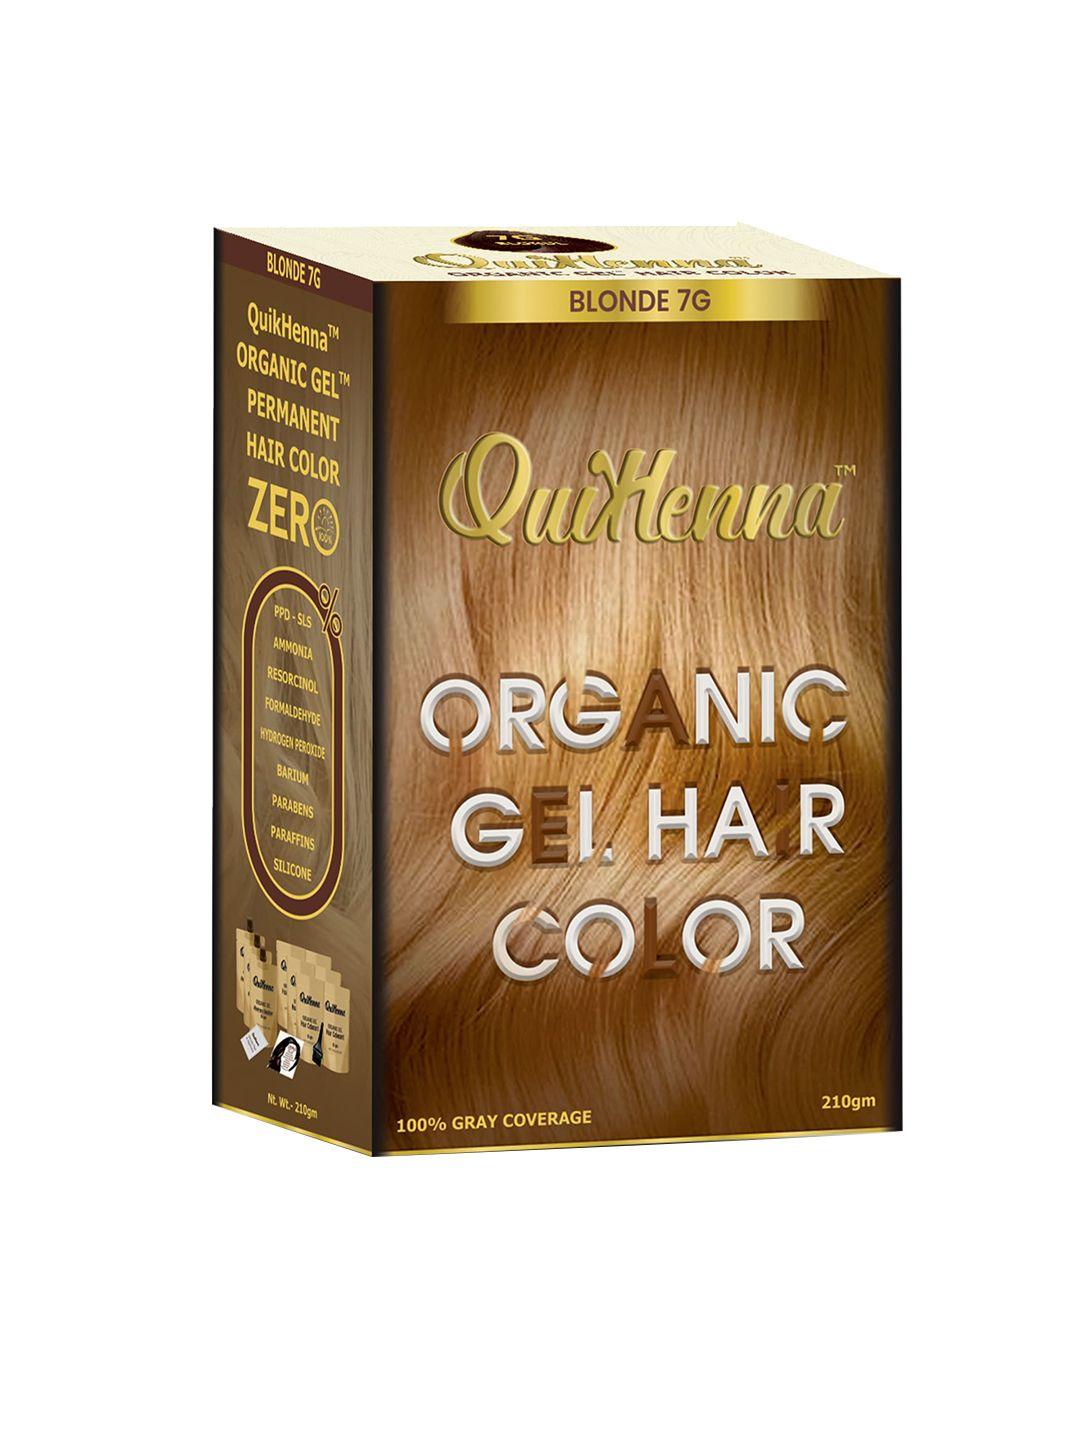 quikhenna organic gel ppd & ammonia free hair colour 210gm - blonde 7g